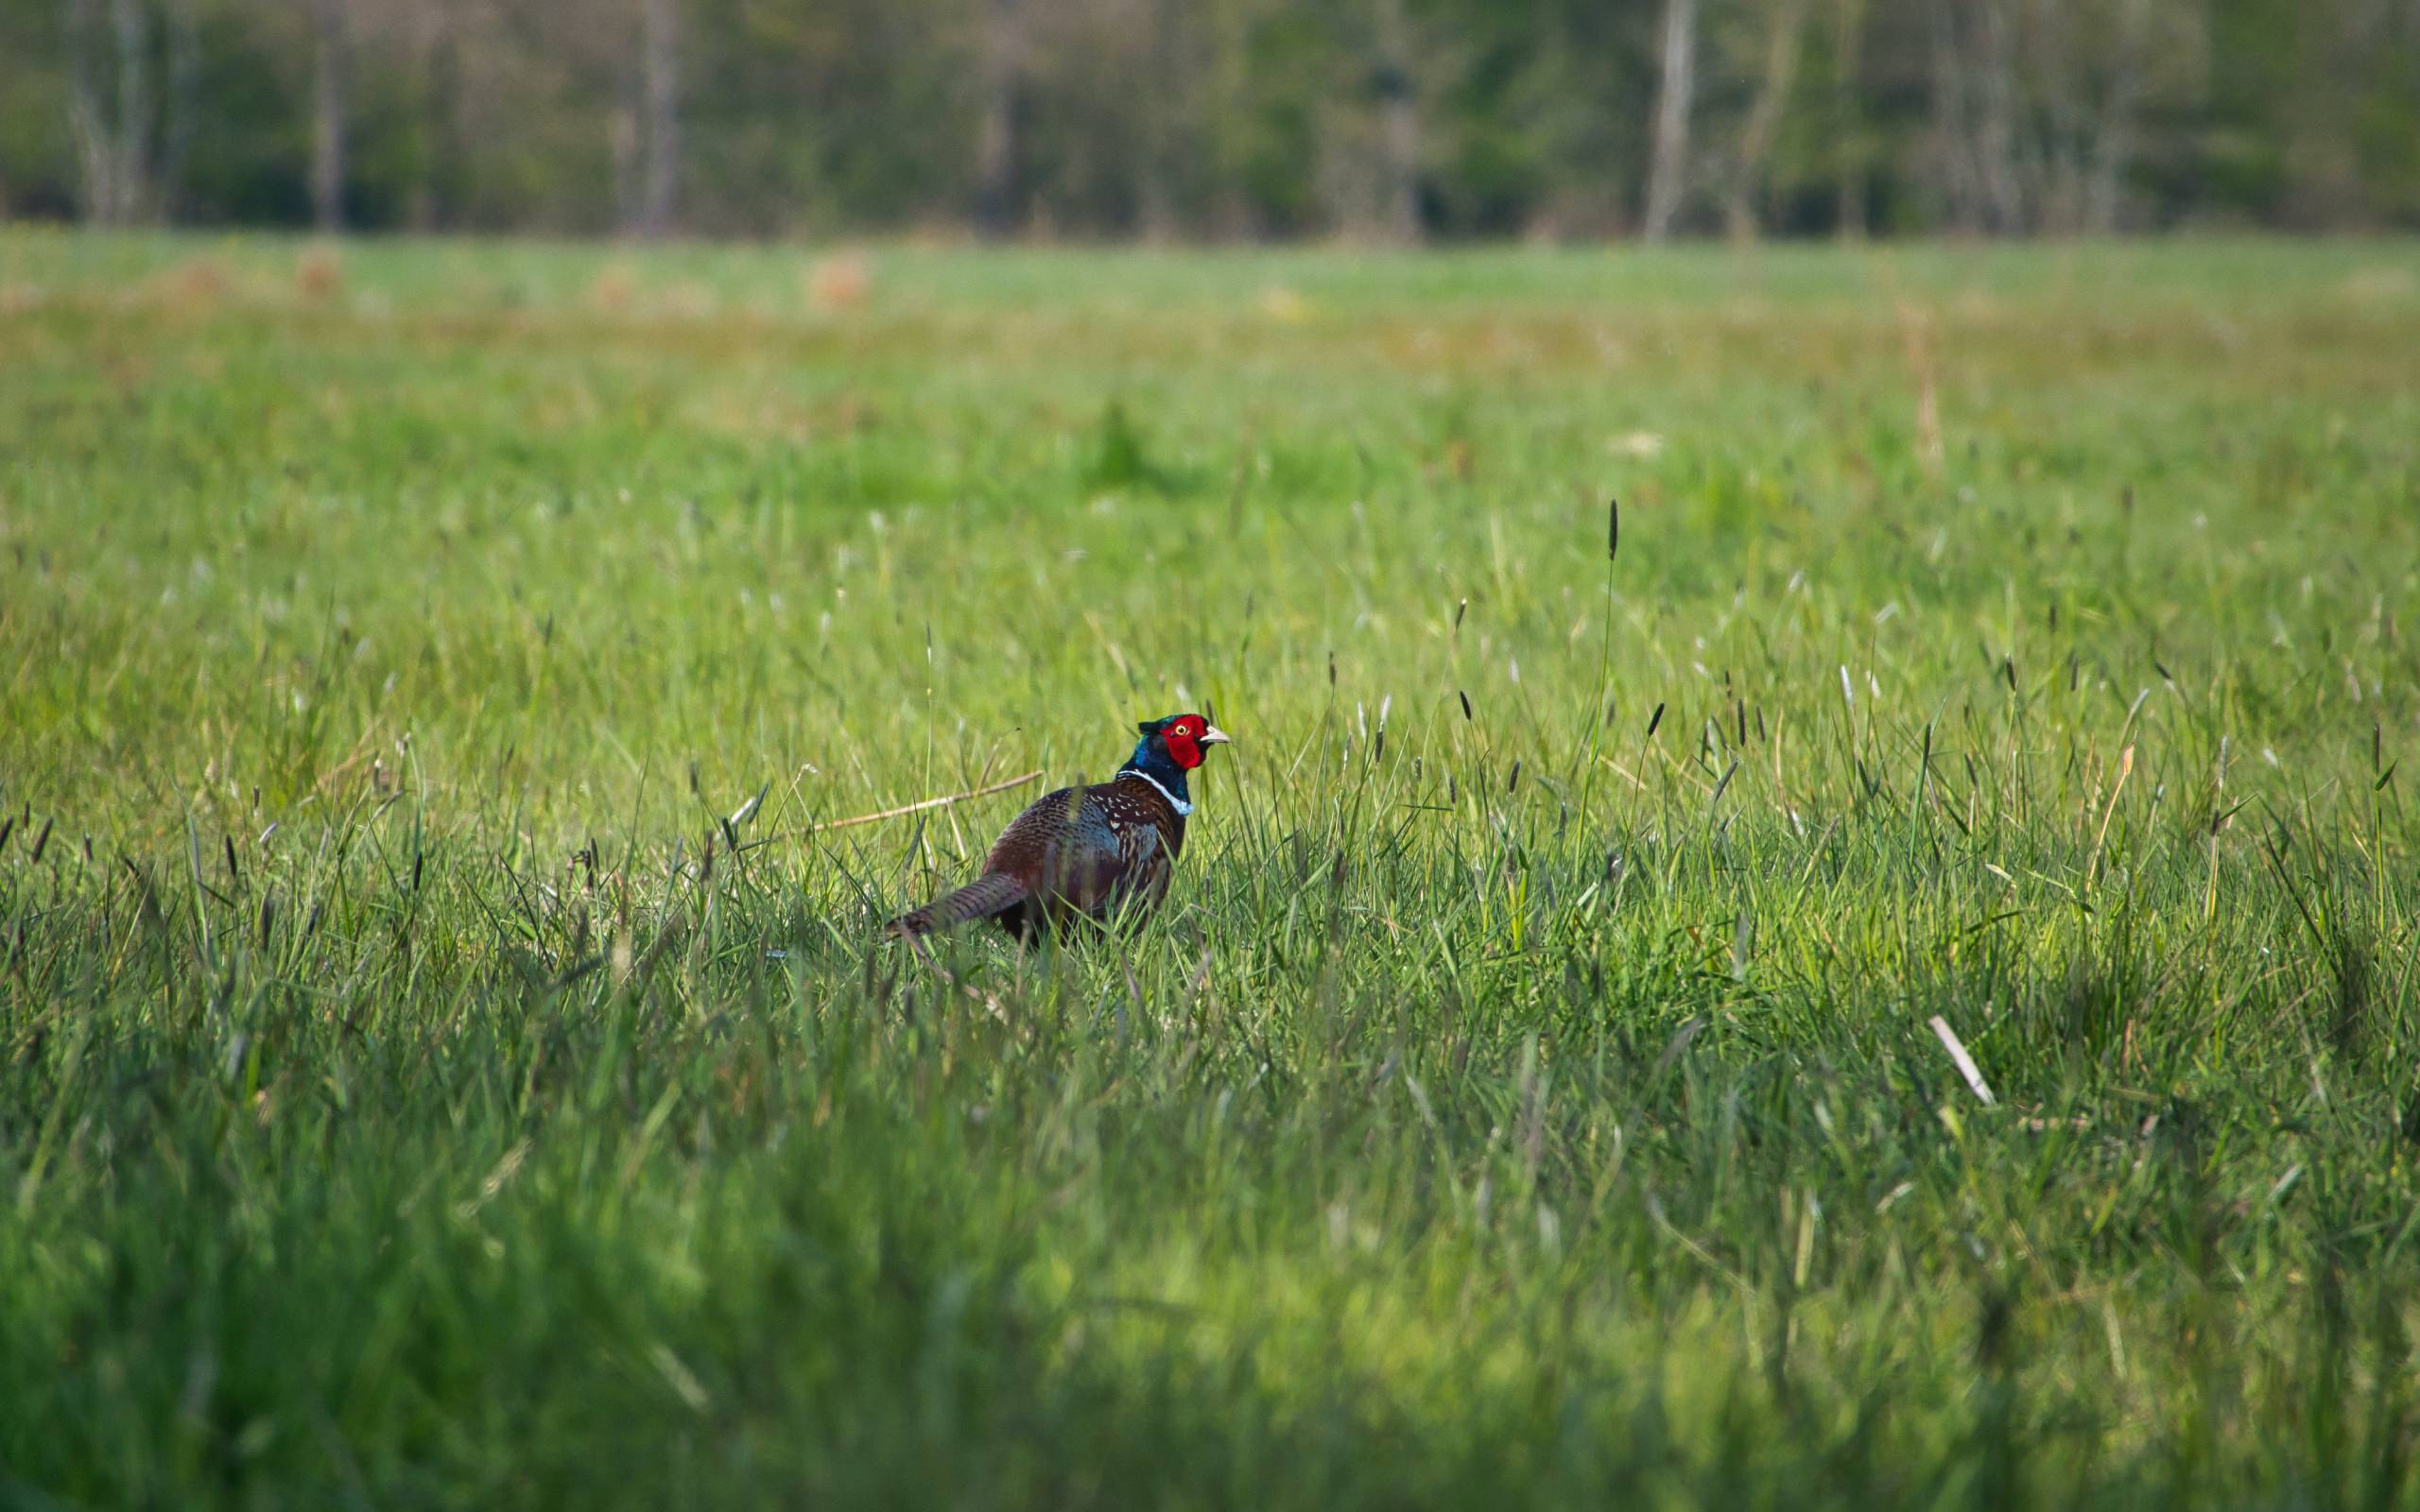 A pheasant in a grass meadow